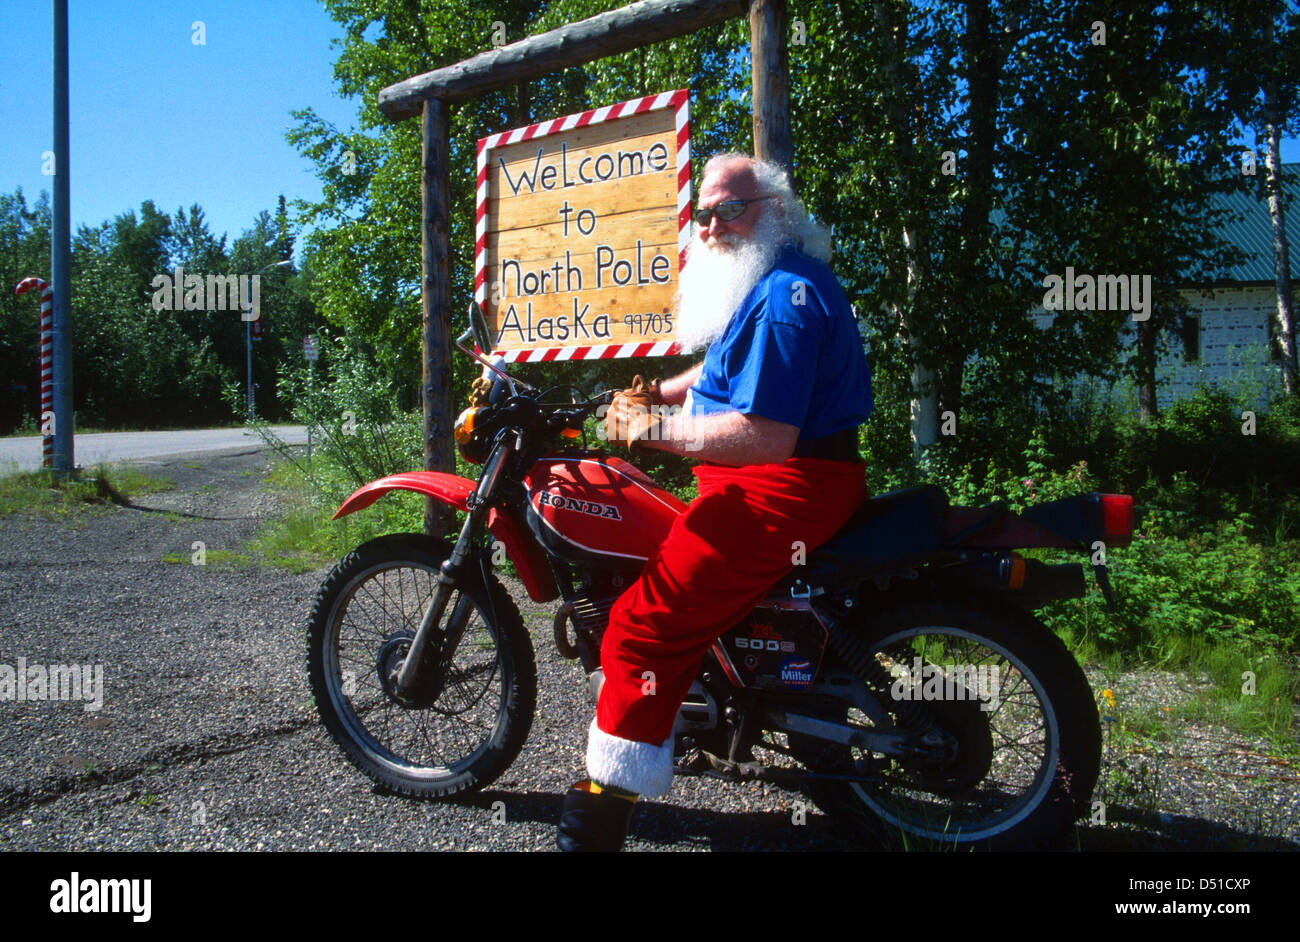 'Santa' on a motorcycle at North Pole, Alaska, USA Stock Photo